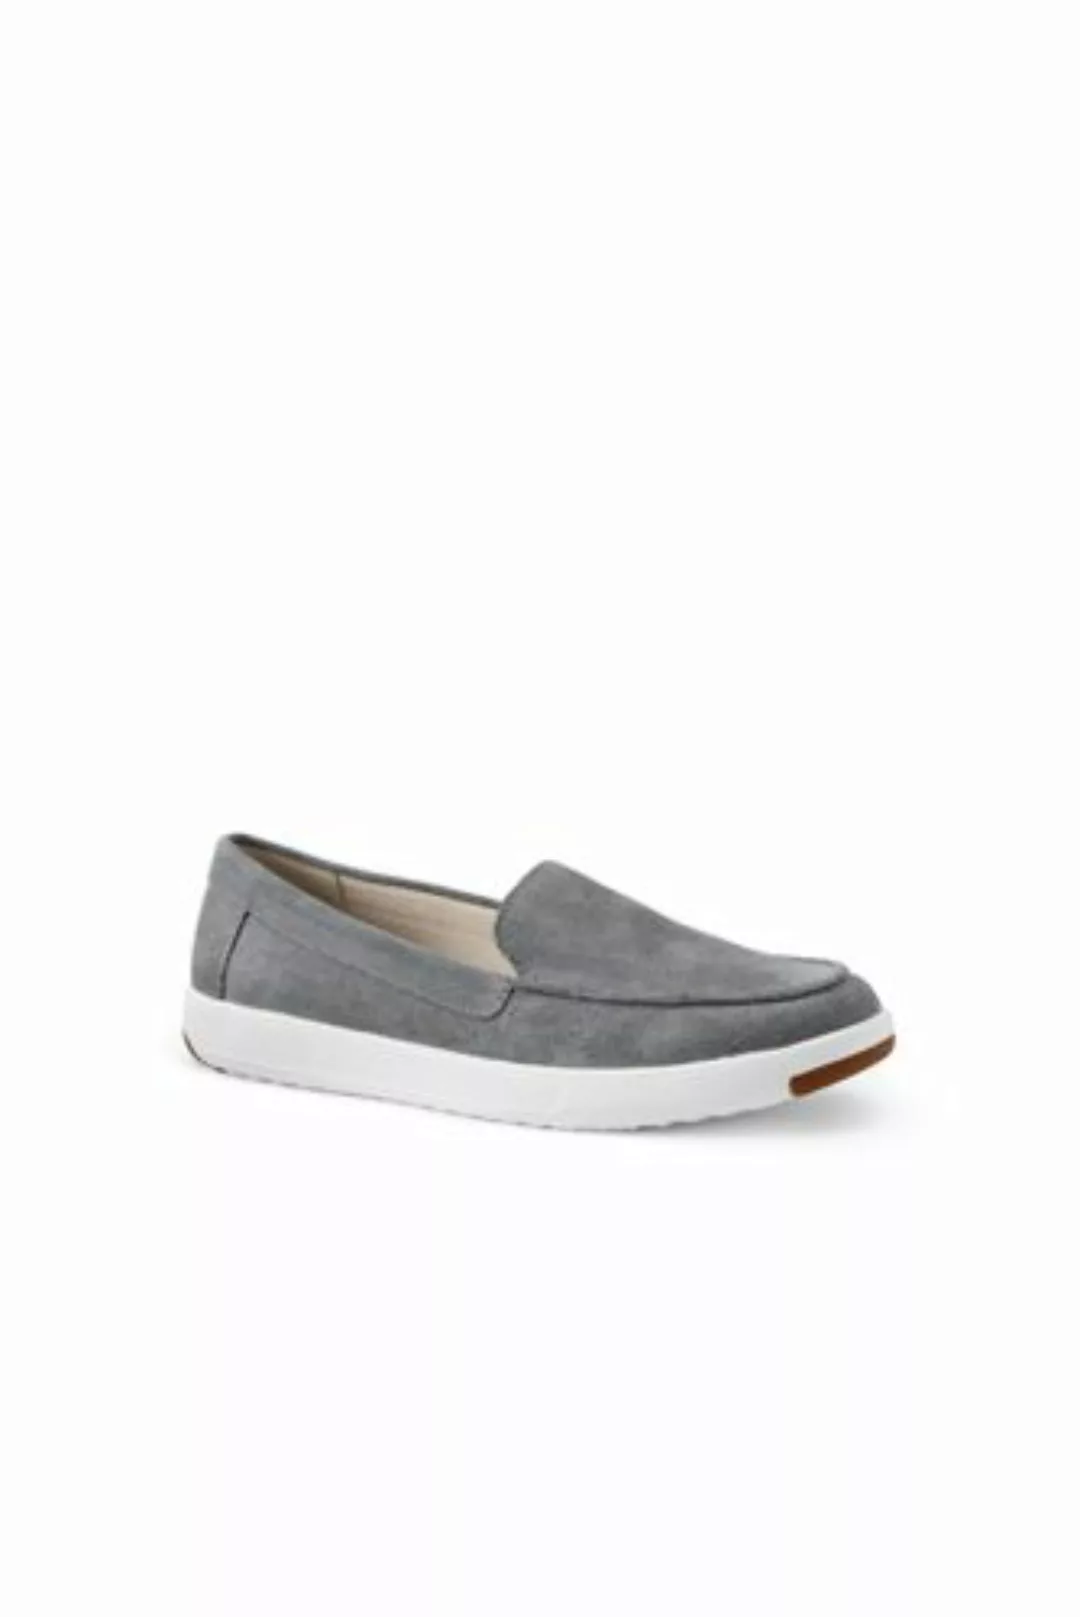 Federleichte Komfort-Loafer, Damen, Größe: 39 Normal, Grau, Rauleder, by La günstig online kaufen